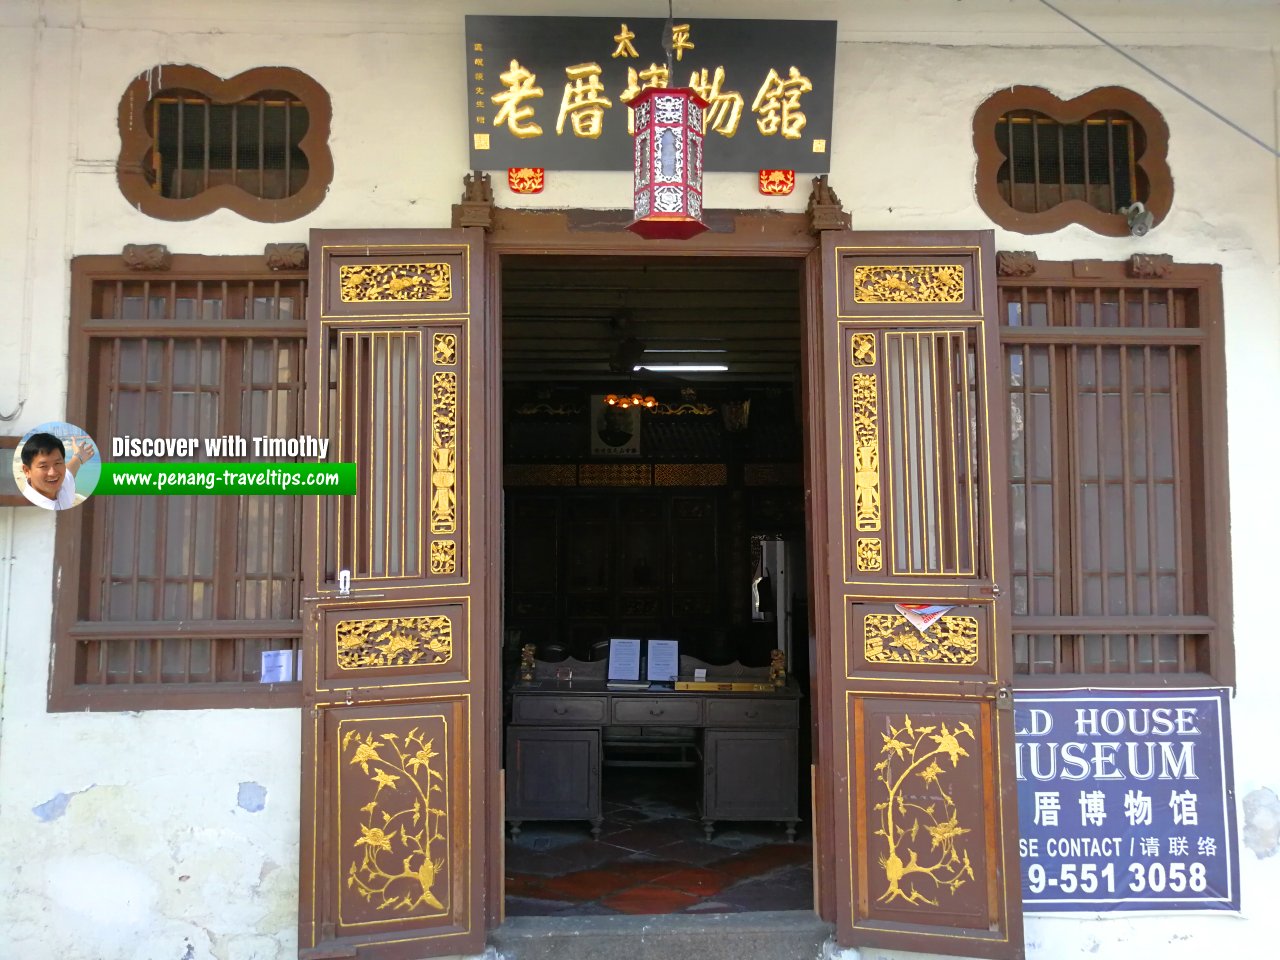 Old House Museum, Taiping, Perak